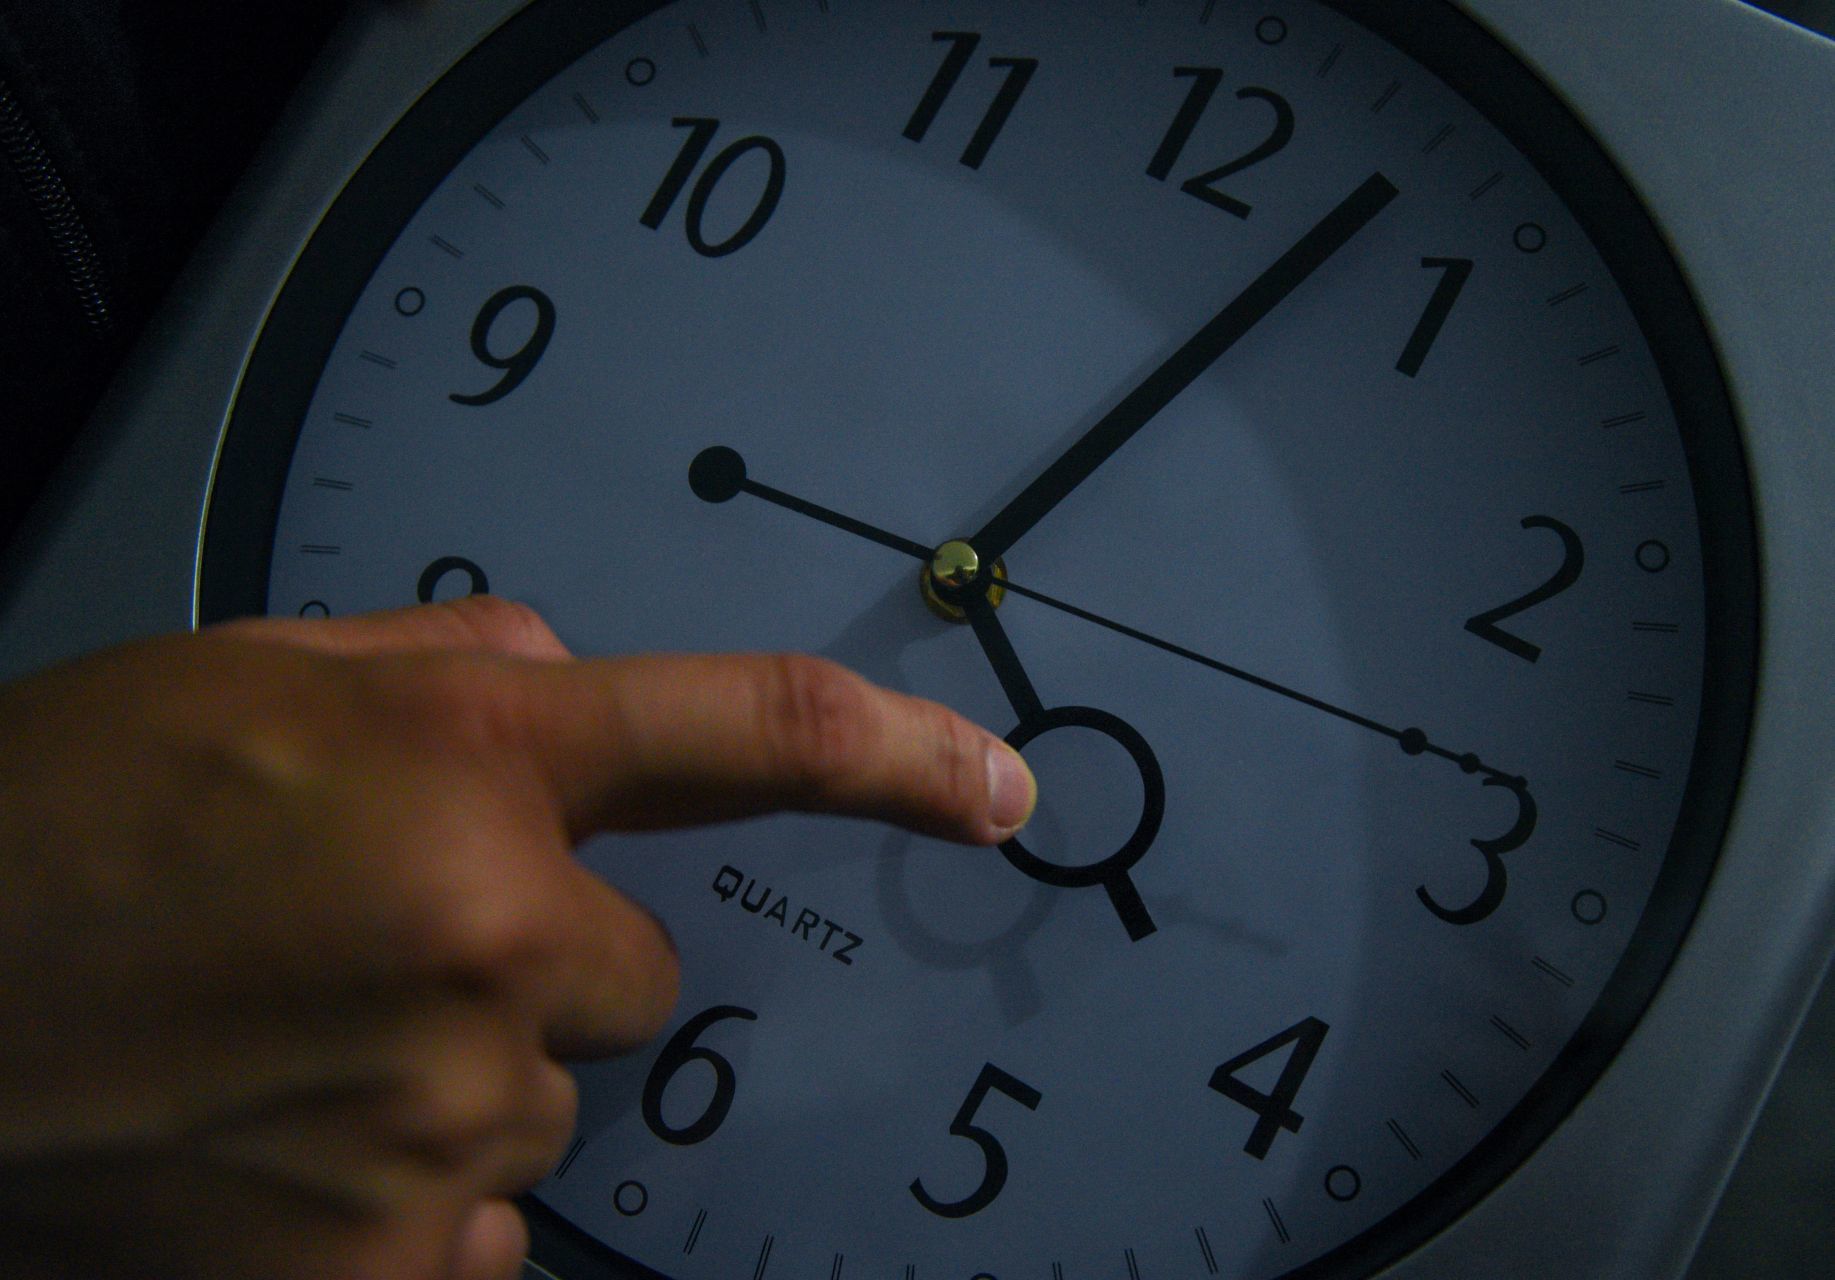 Cambio de horario: así puedes consultar la hora exacta si aún te confundes